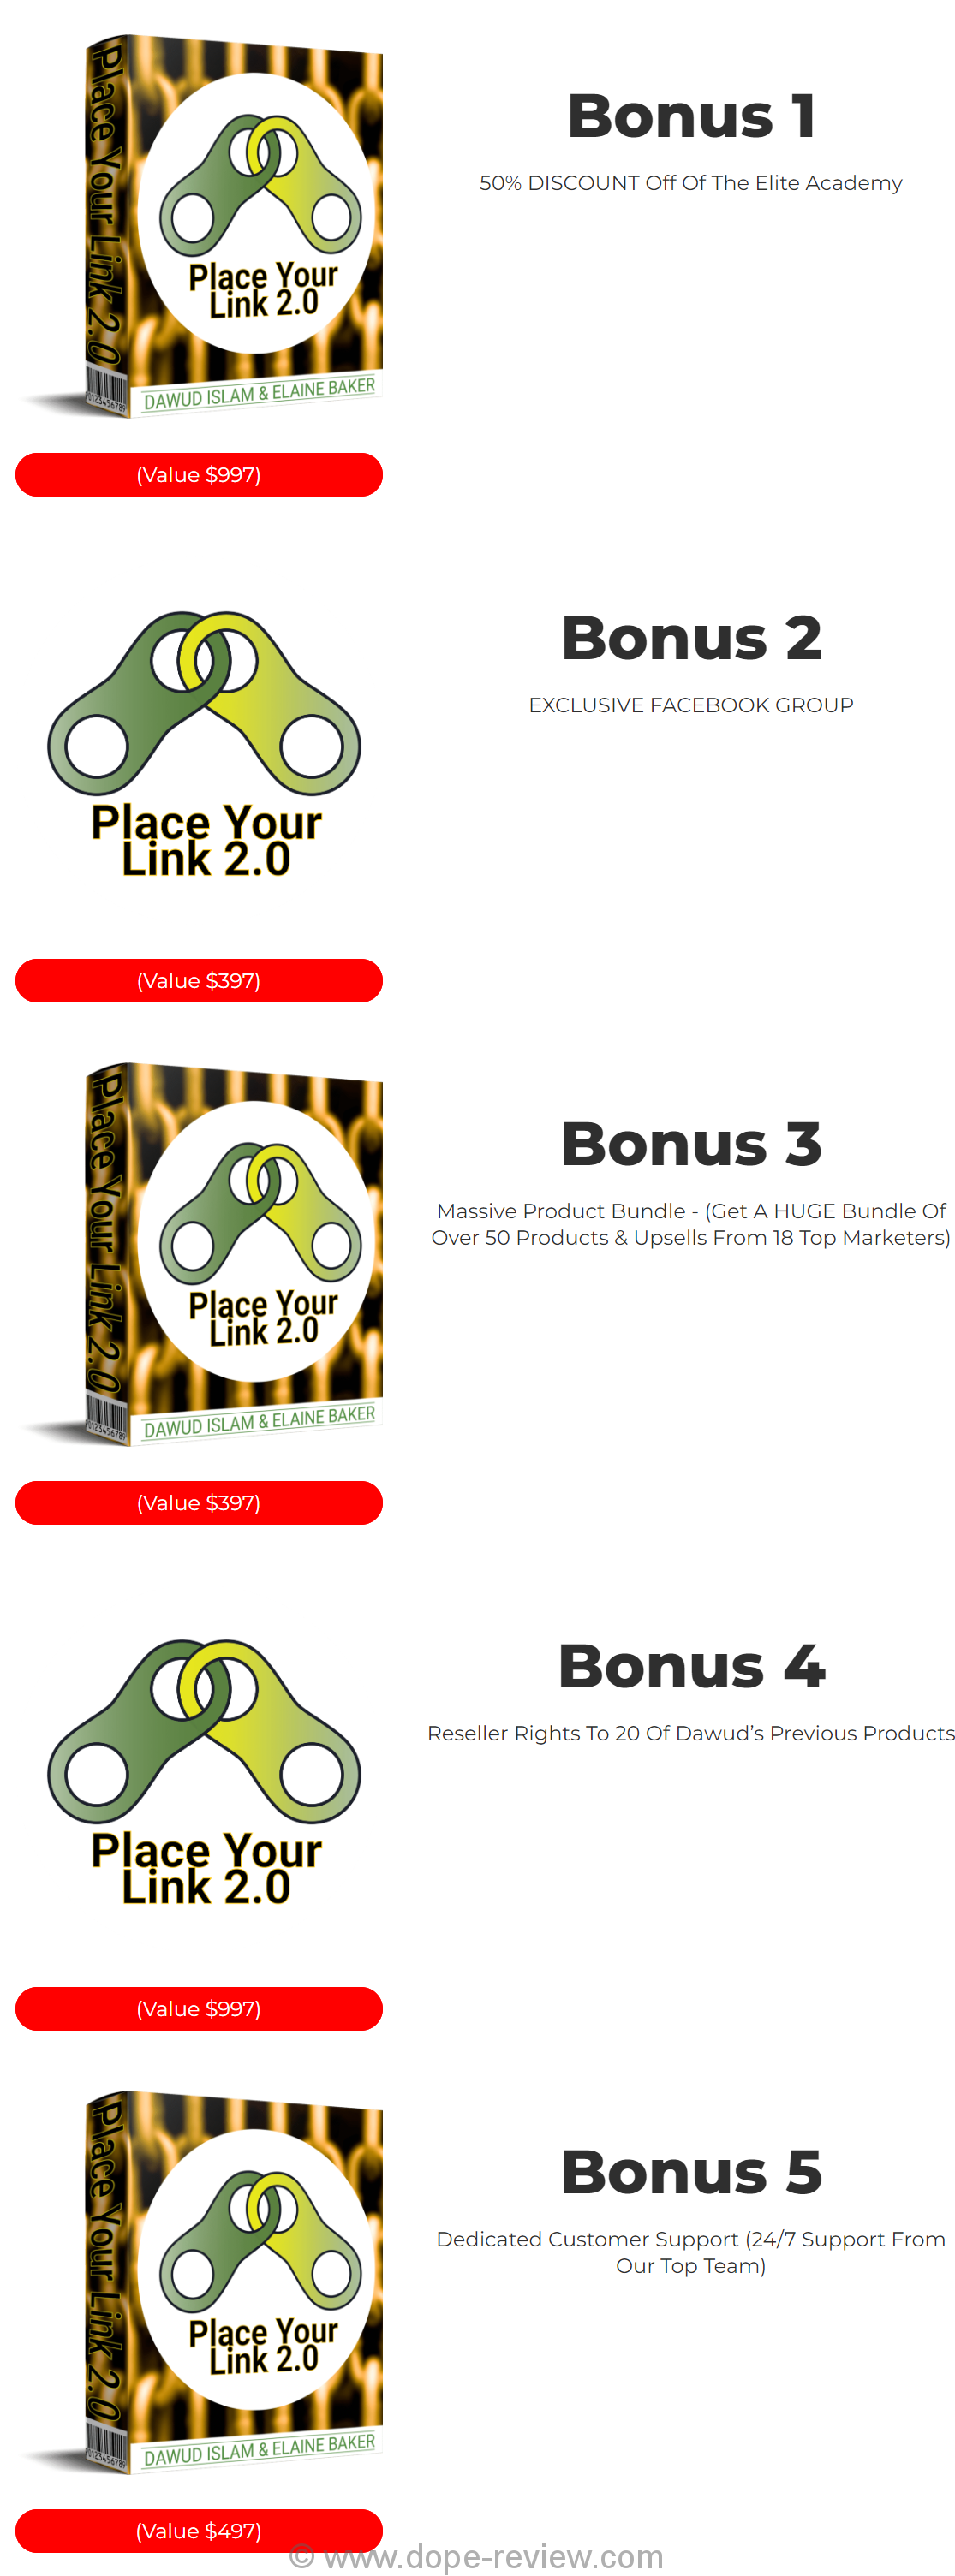 Place Your Link 2.0 Bonus